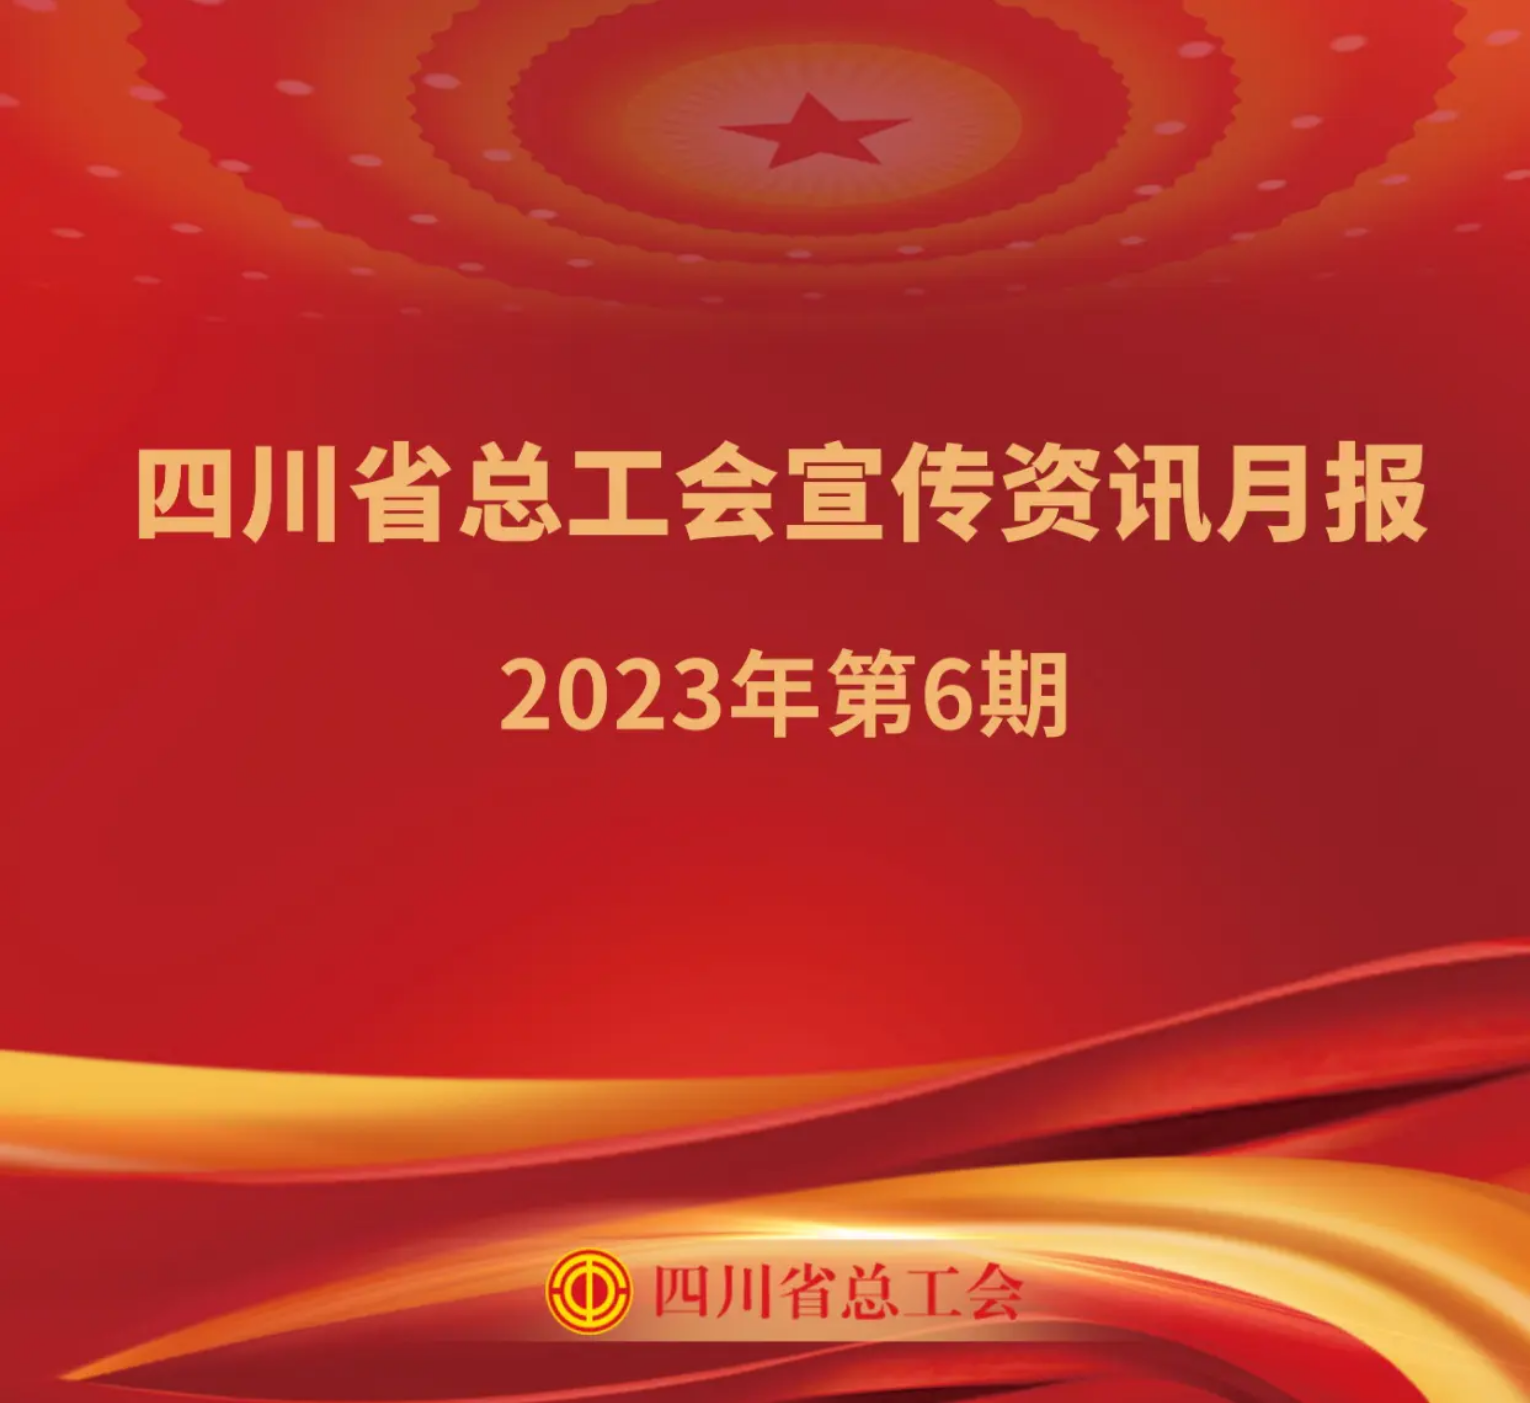 四川省总工会宣传资讯月报2023年第6期